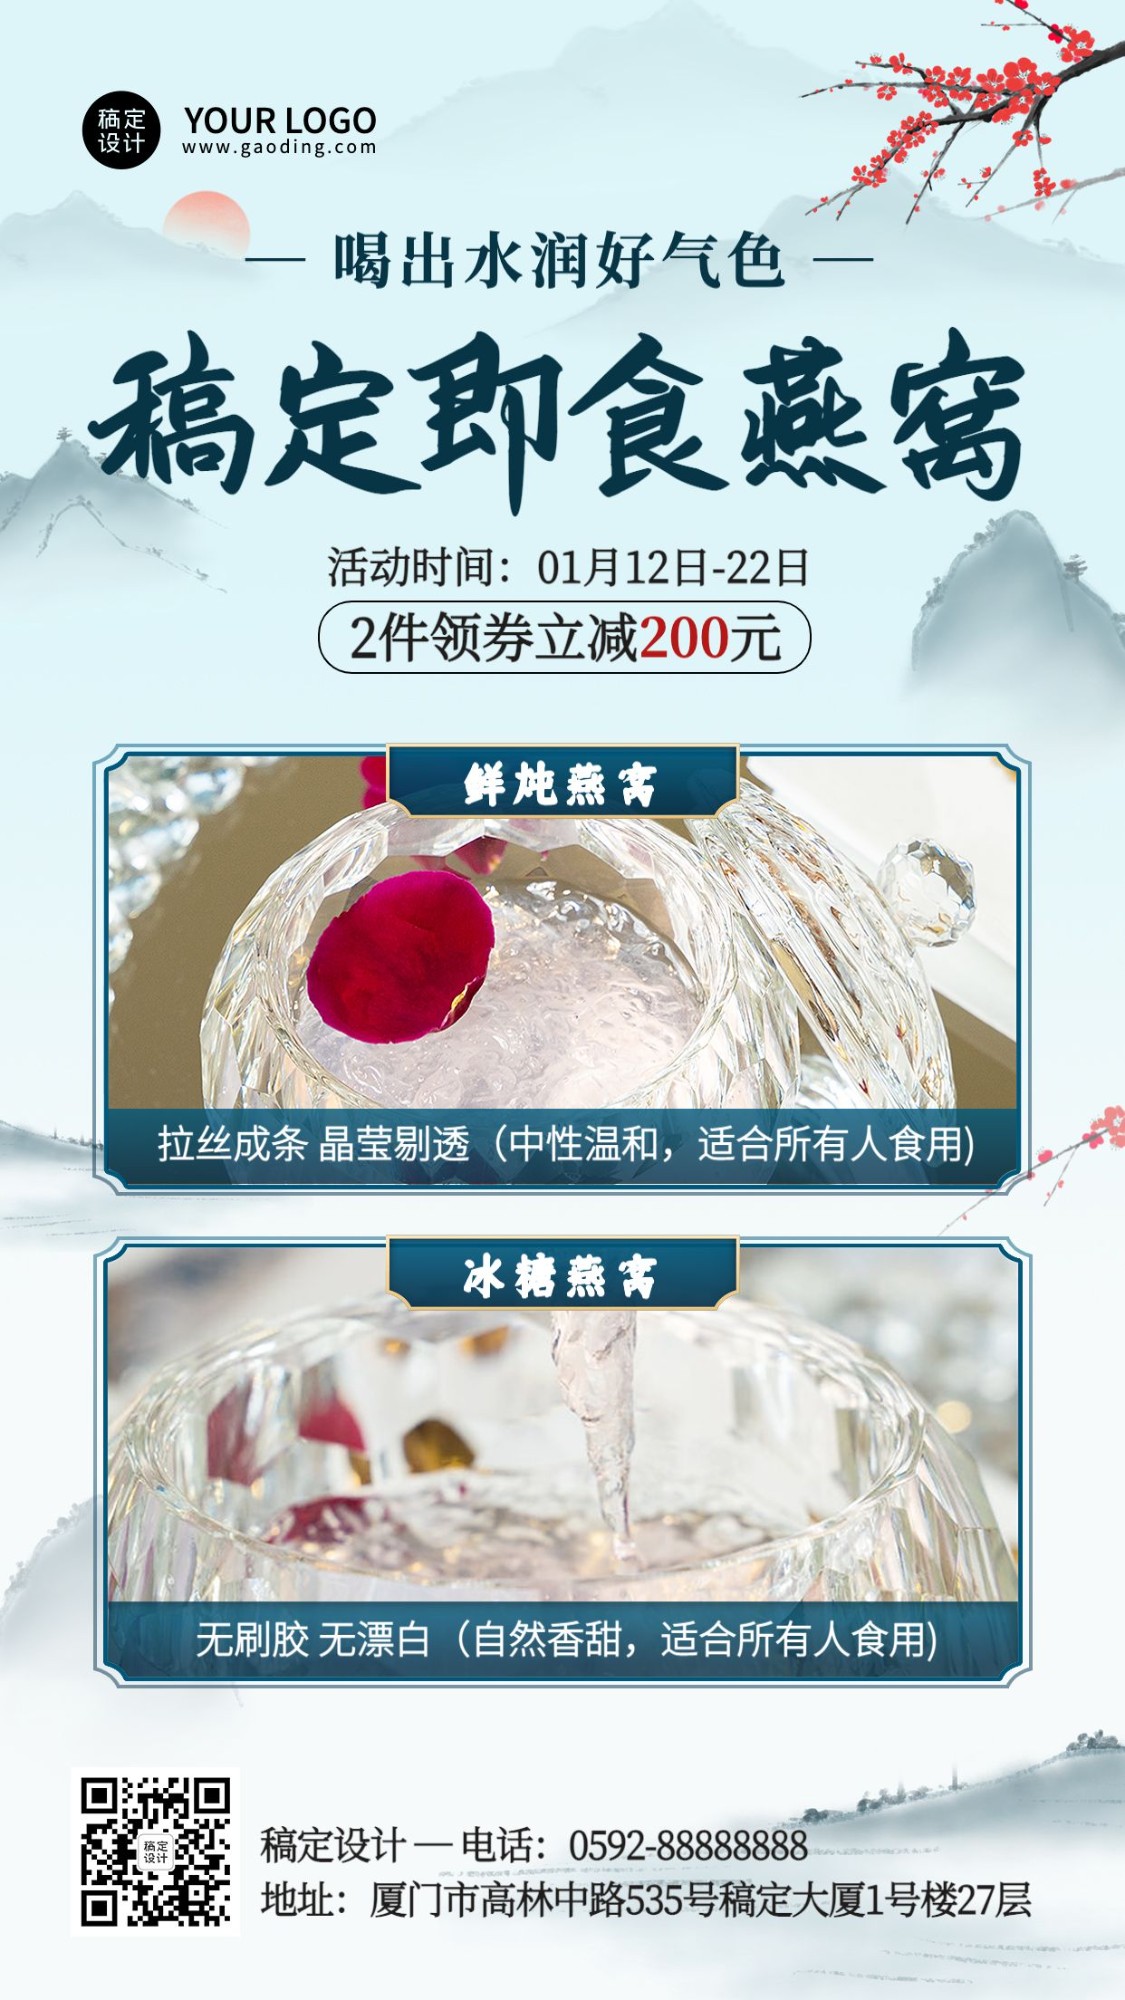 养生保健燕窝产品营销展示中国风手机海报预览效果